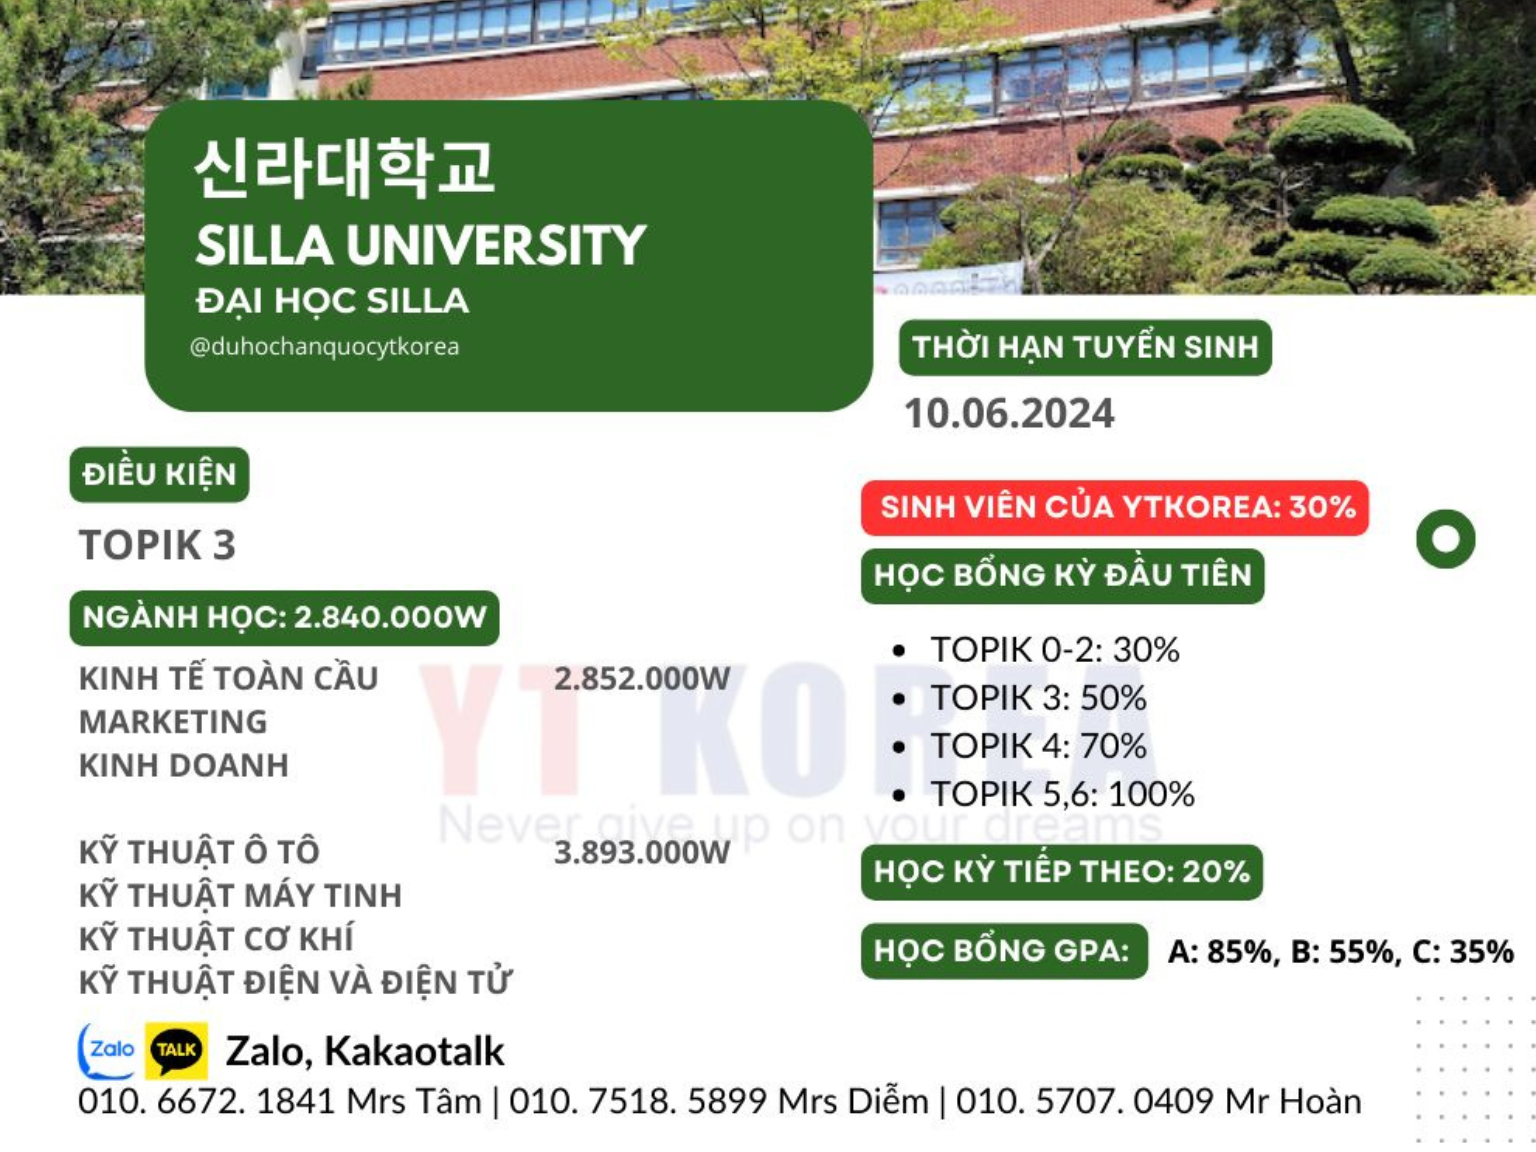 Đại học Silla ứng tuyển lên chuyên ngành D2